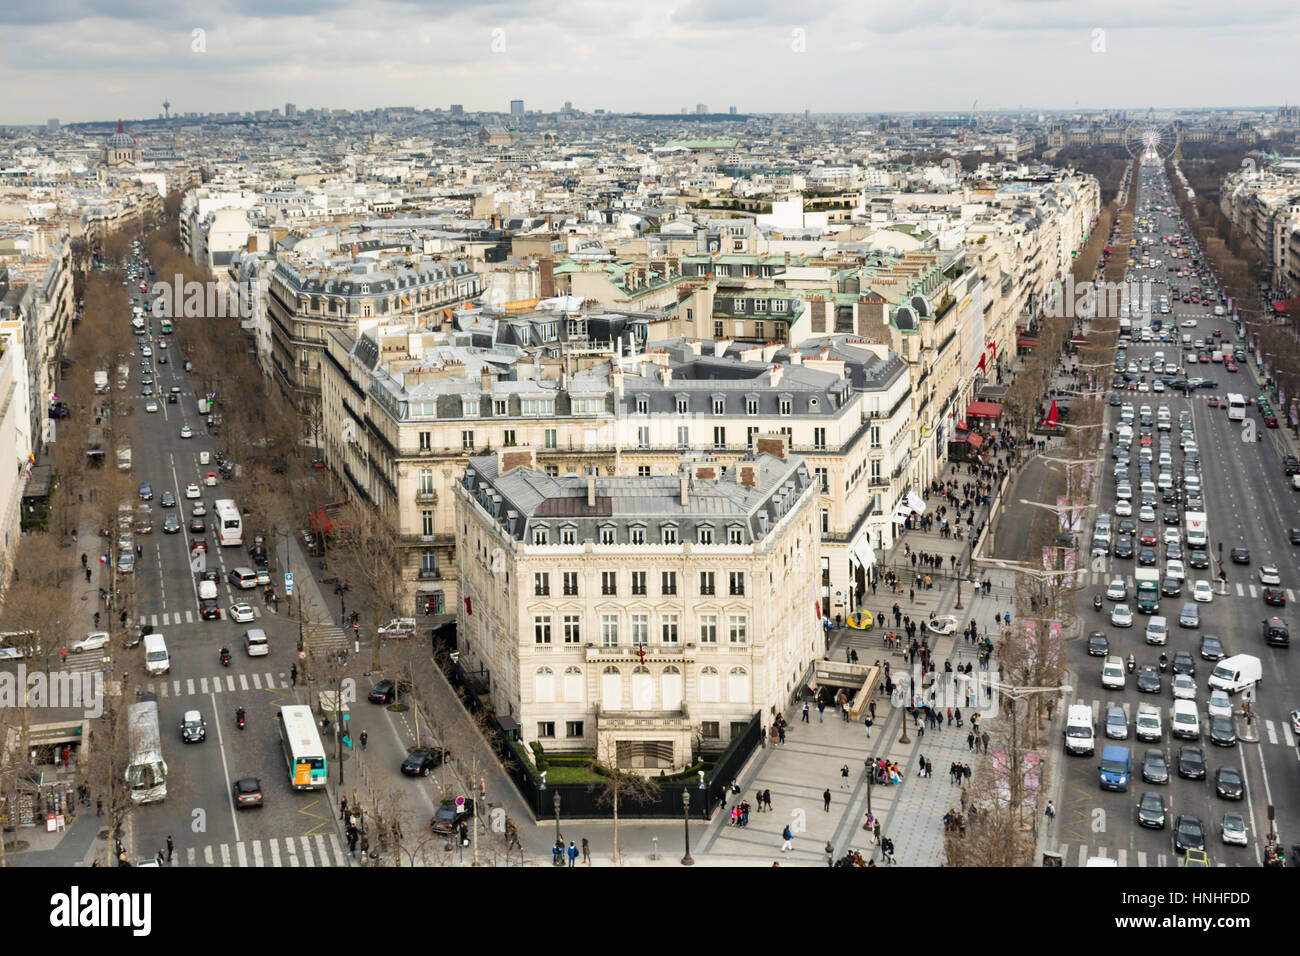 Vue aérienne de Paris avec des bâtiments de style haussmannien et les toits, de l'Arc de Triomphe. Paris, France. Banque D'Images